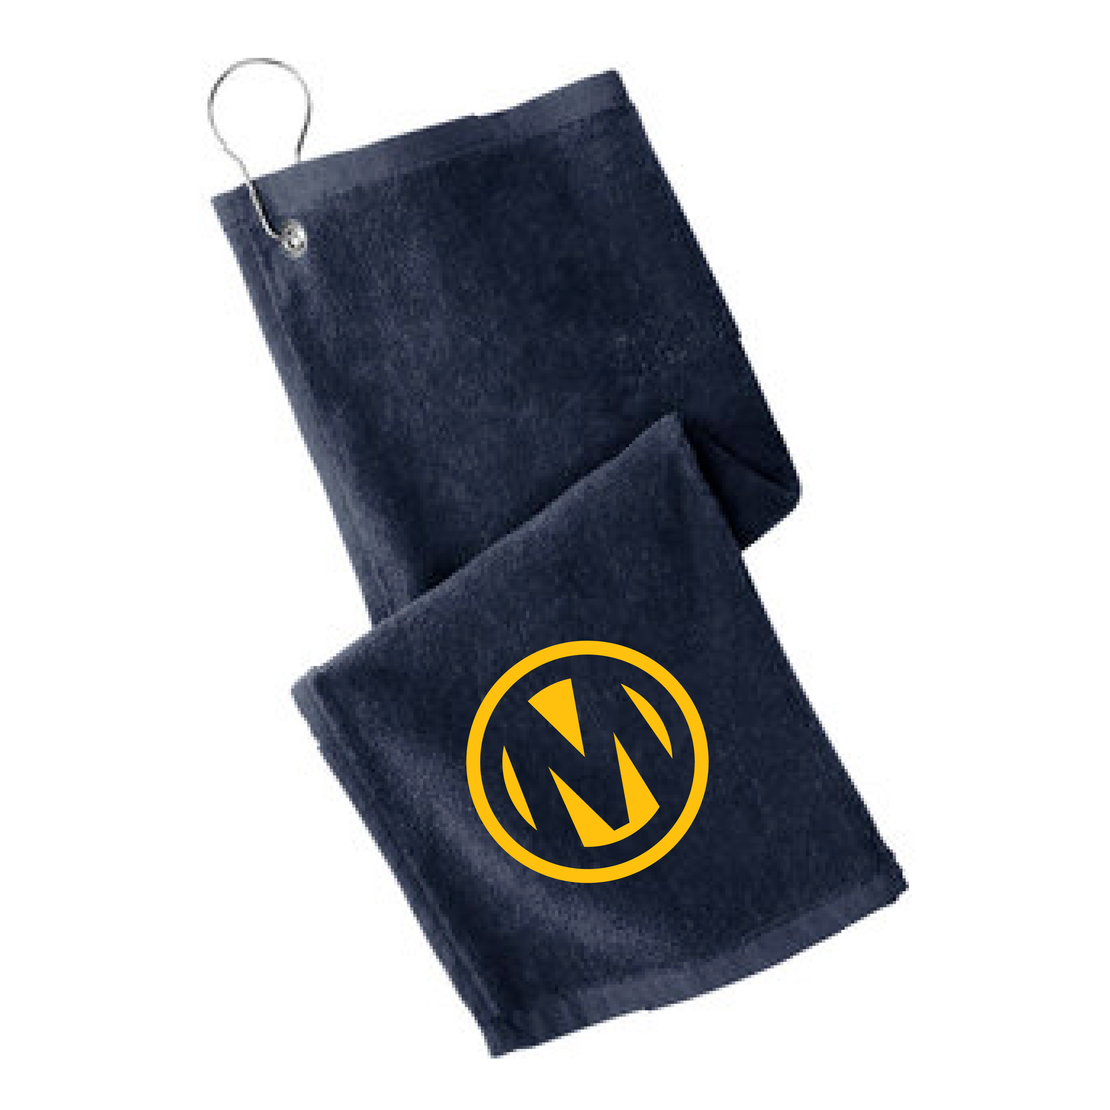 Manheim Milwaukee Golf Shoe Bag & Towel